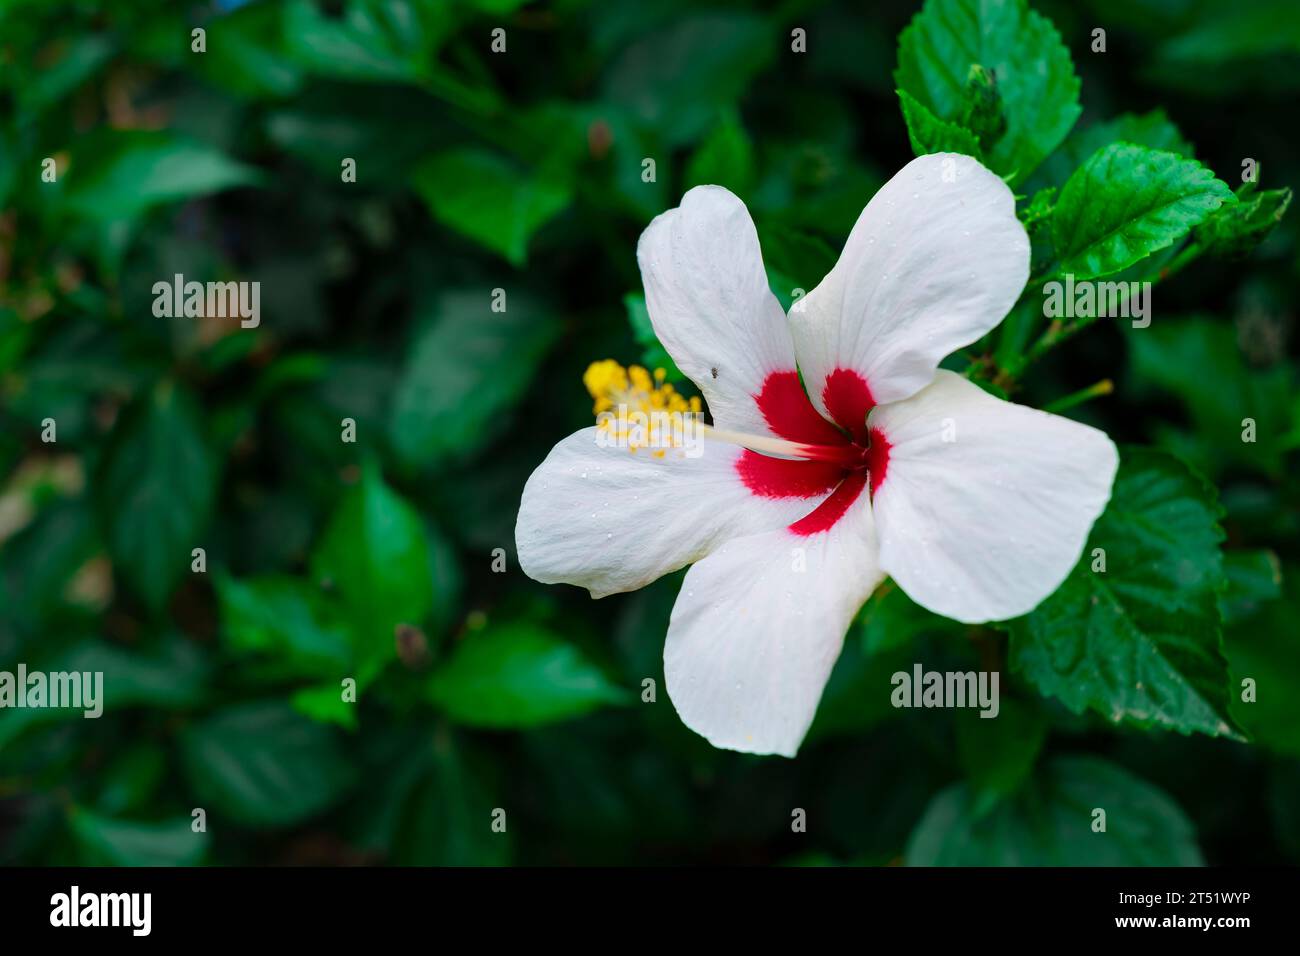 Belle fleur blanche d'hibiscus en fleur avec coeur rouge et long pistil avec pollen jaune dans un jardin vert Banque D'Images